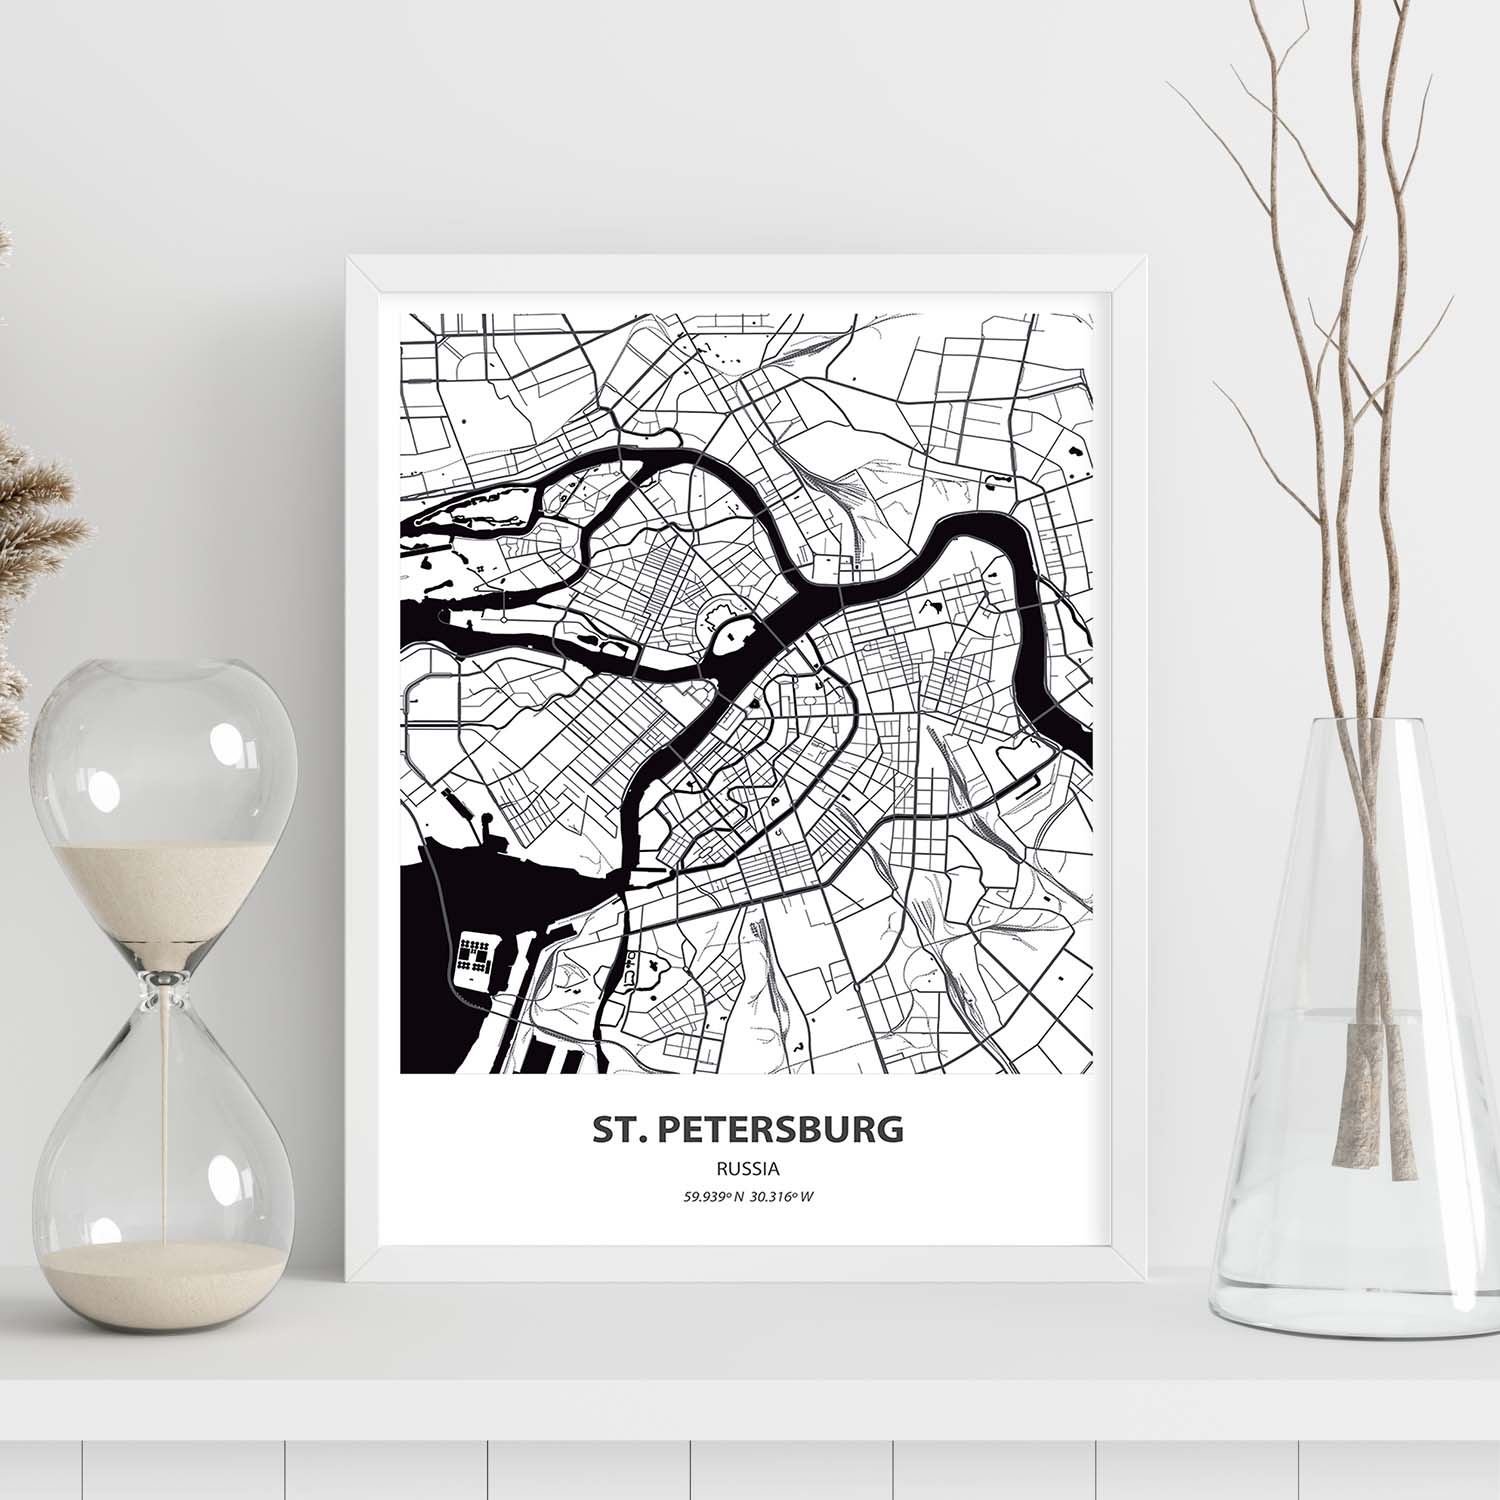 Poster con mapa de St. Petersburg - Rusia. Láminas de ciudades de Asia con mares y ríos en color negro.-Artwork-Nacnic-Nacnic Estudio SL